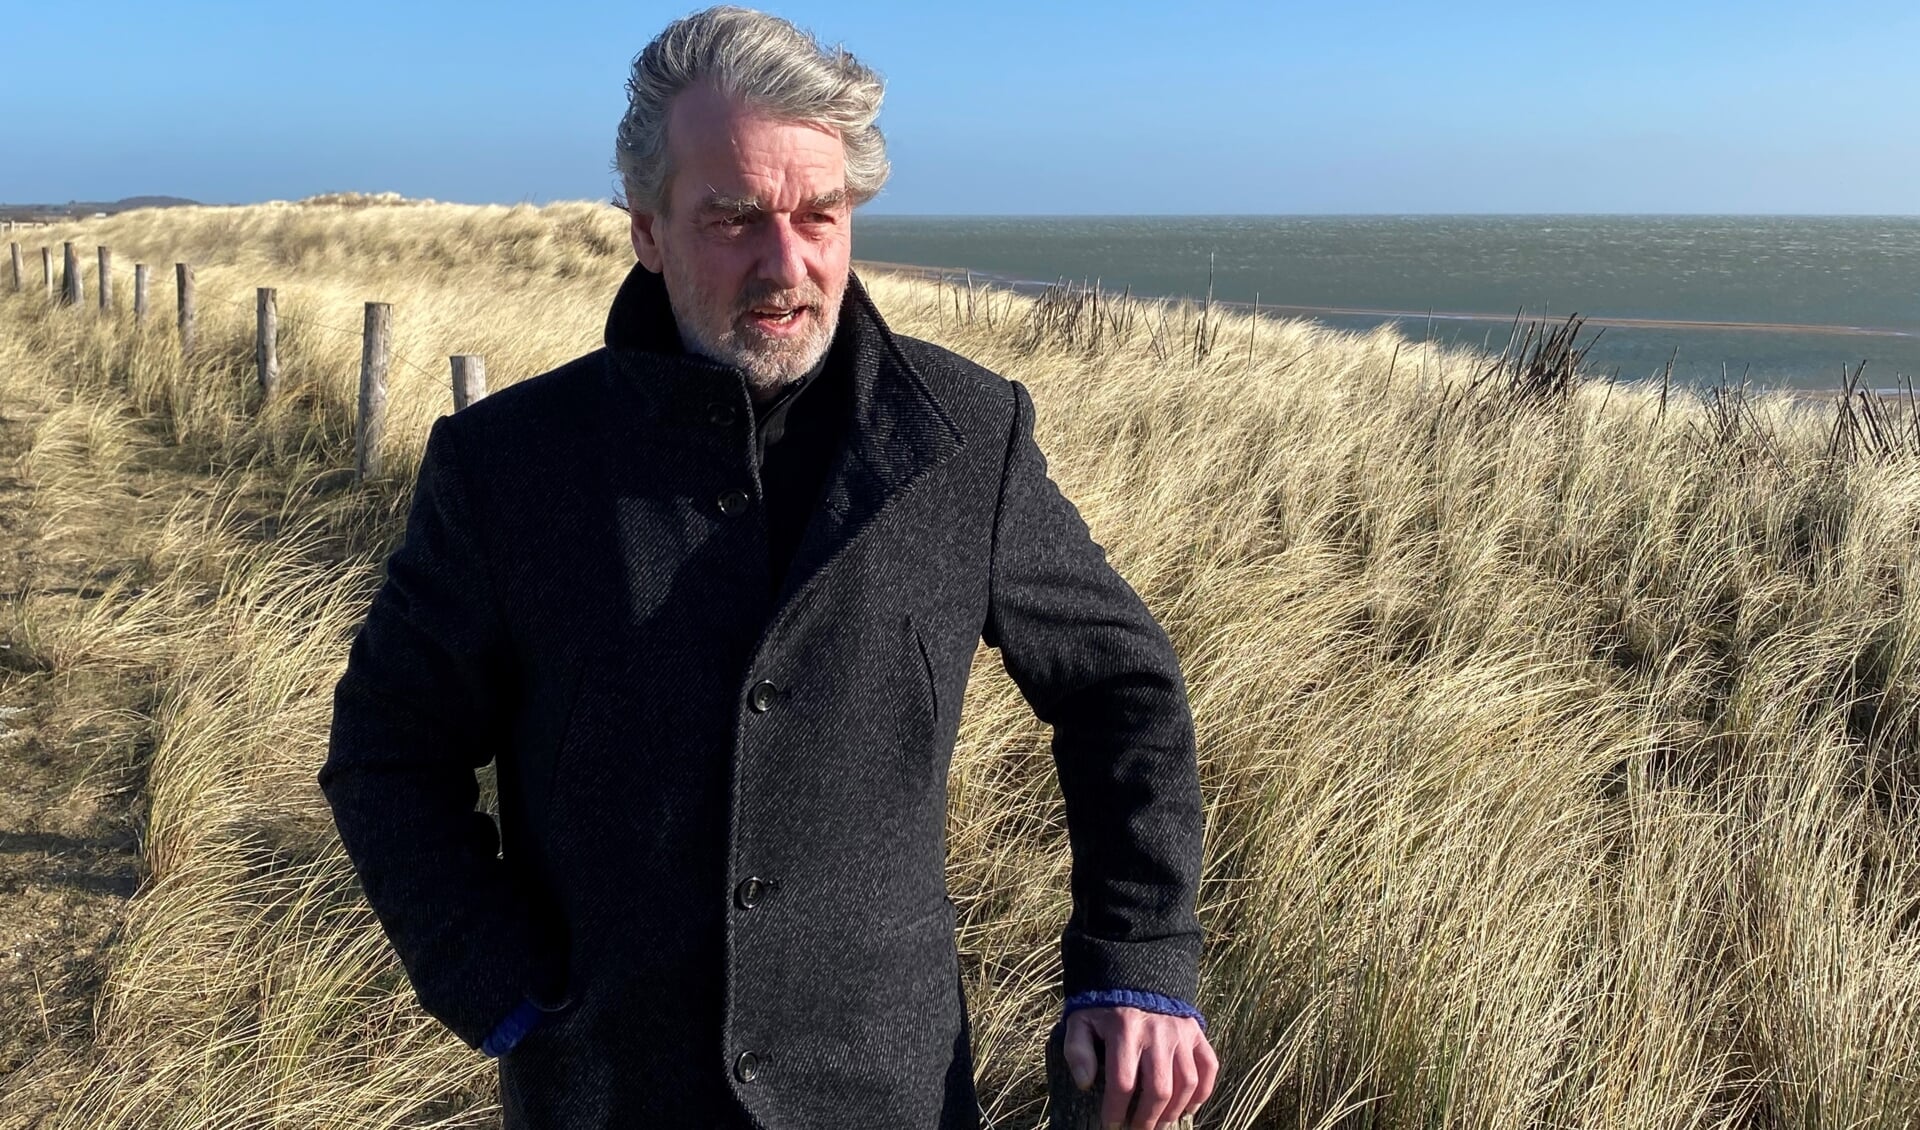 Cor van der Knaap, initiatiefnemer van de petitie "Tesselaars voor de wind", op de Prins Hendrikdijk bij het NIOZ., vlakbij de door hem beoogde locatie. “Hoog tijd om wind te benutten” 